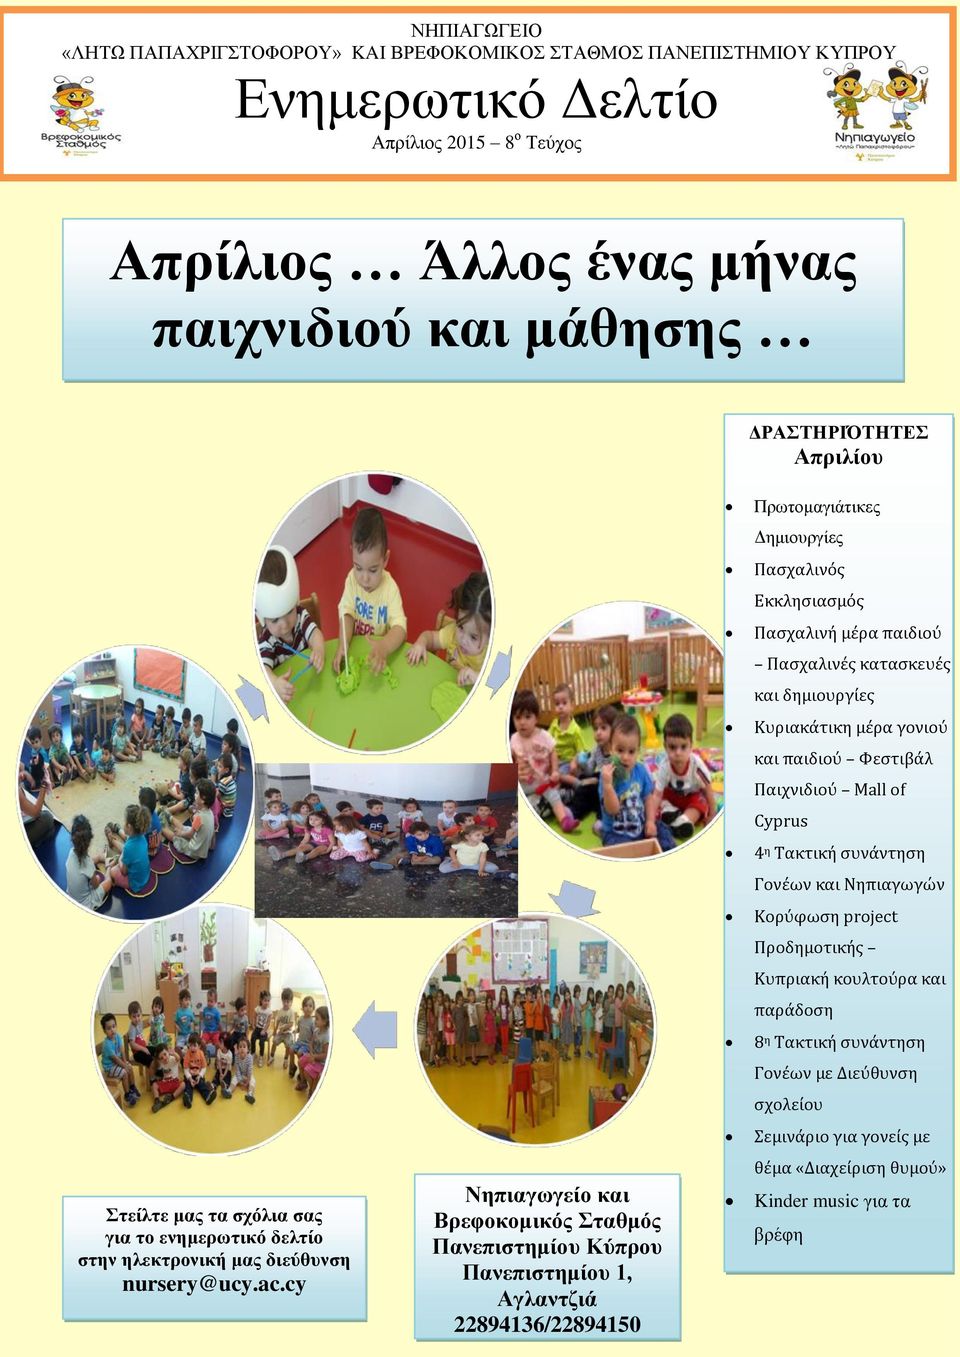 συνάντηση Γονέων και Νηπιαγωγών Κορύφωση project Προδημοτικής Κυπριακή κουλτούρα και παράδοση 8 η Τακτική συνάντηση Γονέων με Διεύθυνση σχολείου Σεμινάριο για γονείς με Στείλτε μας τα σχόλια σας για